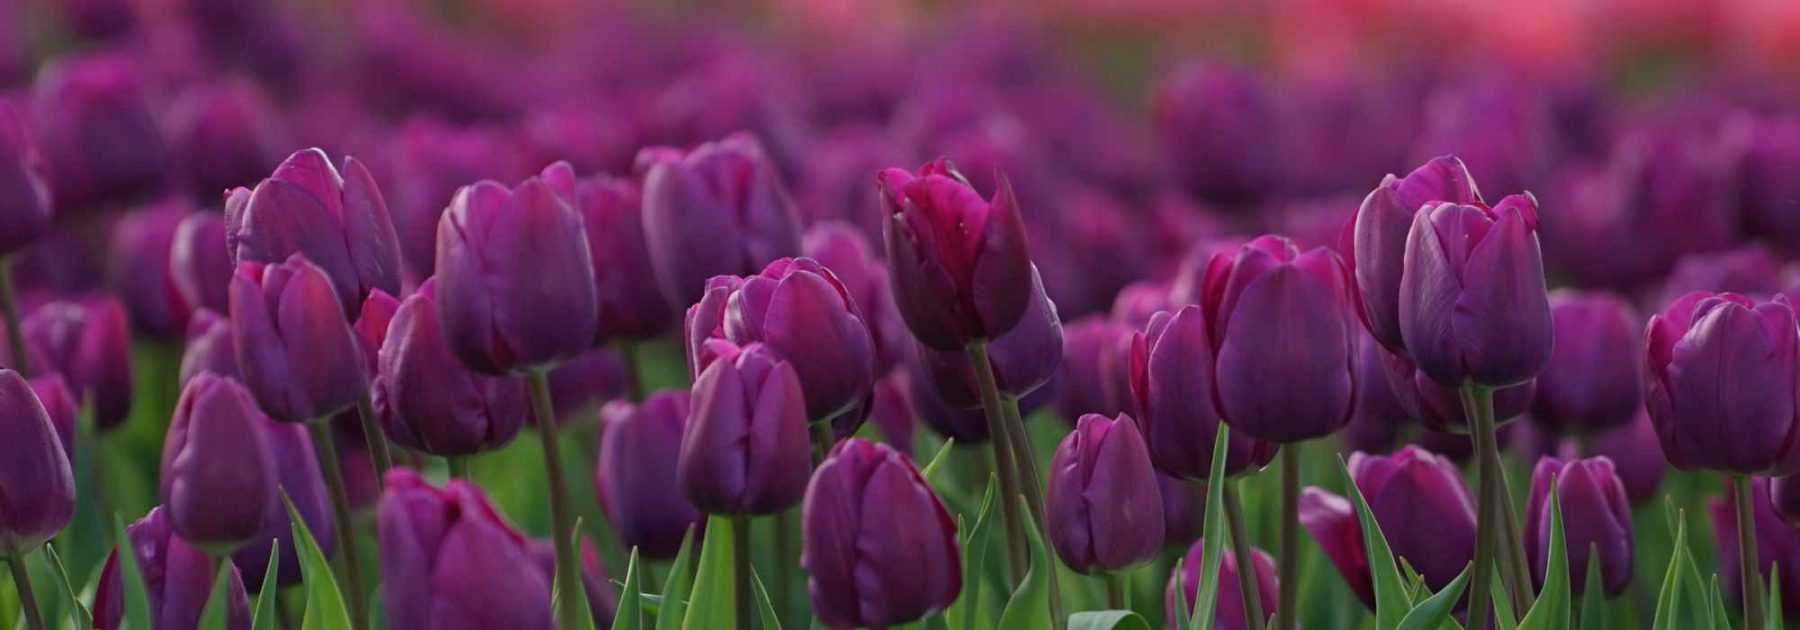 6 tulipes à fleurs violettes, mauves ou pourpres